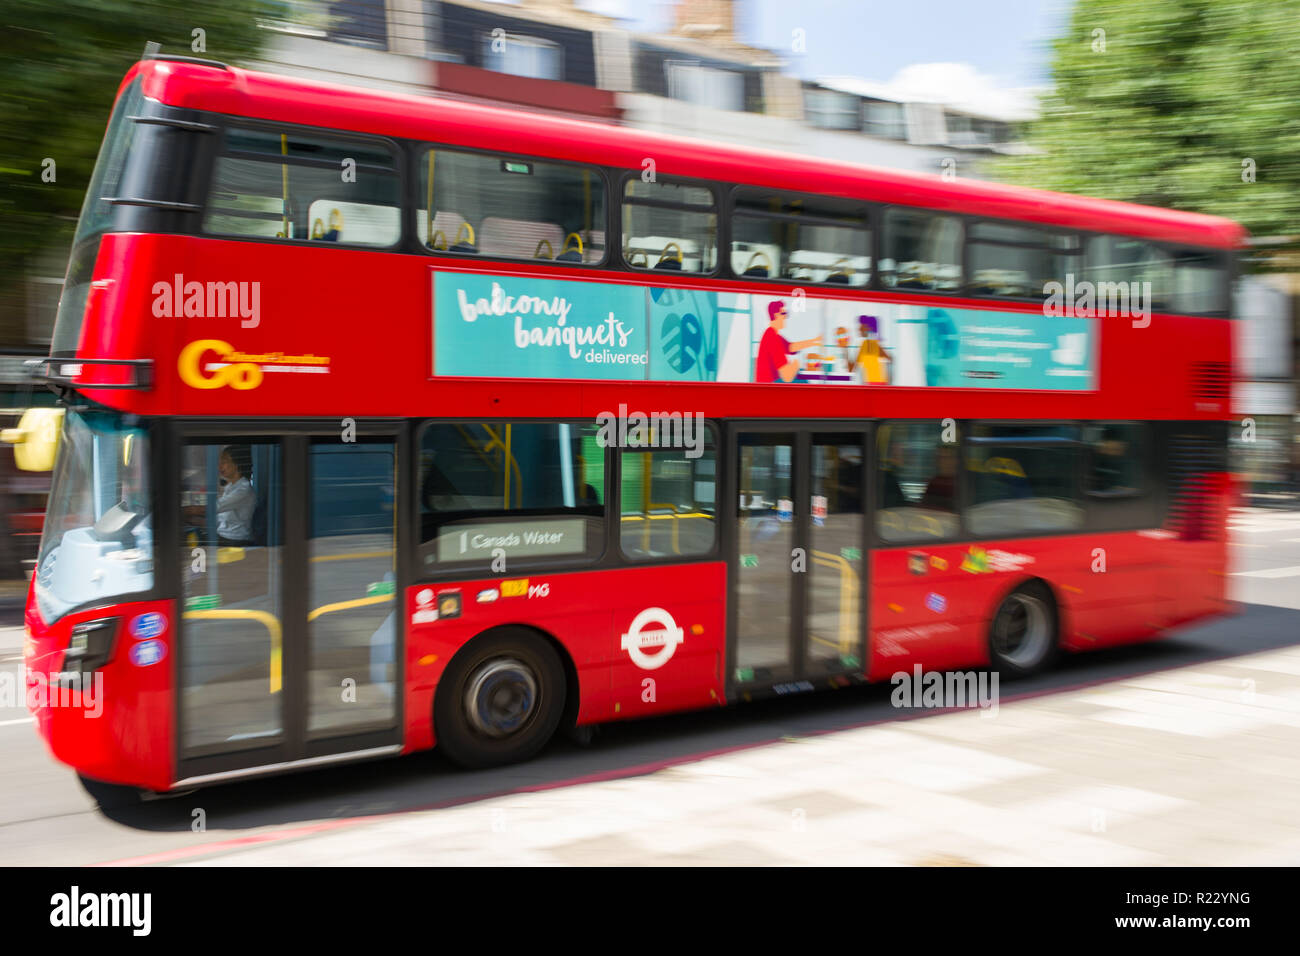 Immagine panoramica di un bus rosso a due piani che si sposta lungo una strada a Londra in una giornata di sole, London, Regno Unito Foto Stock